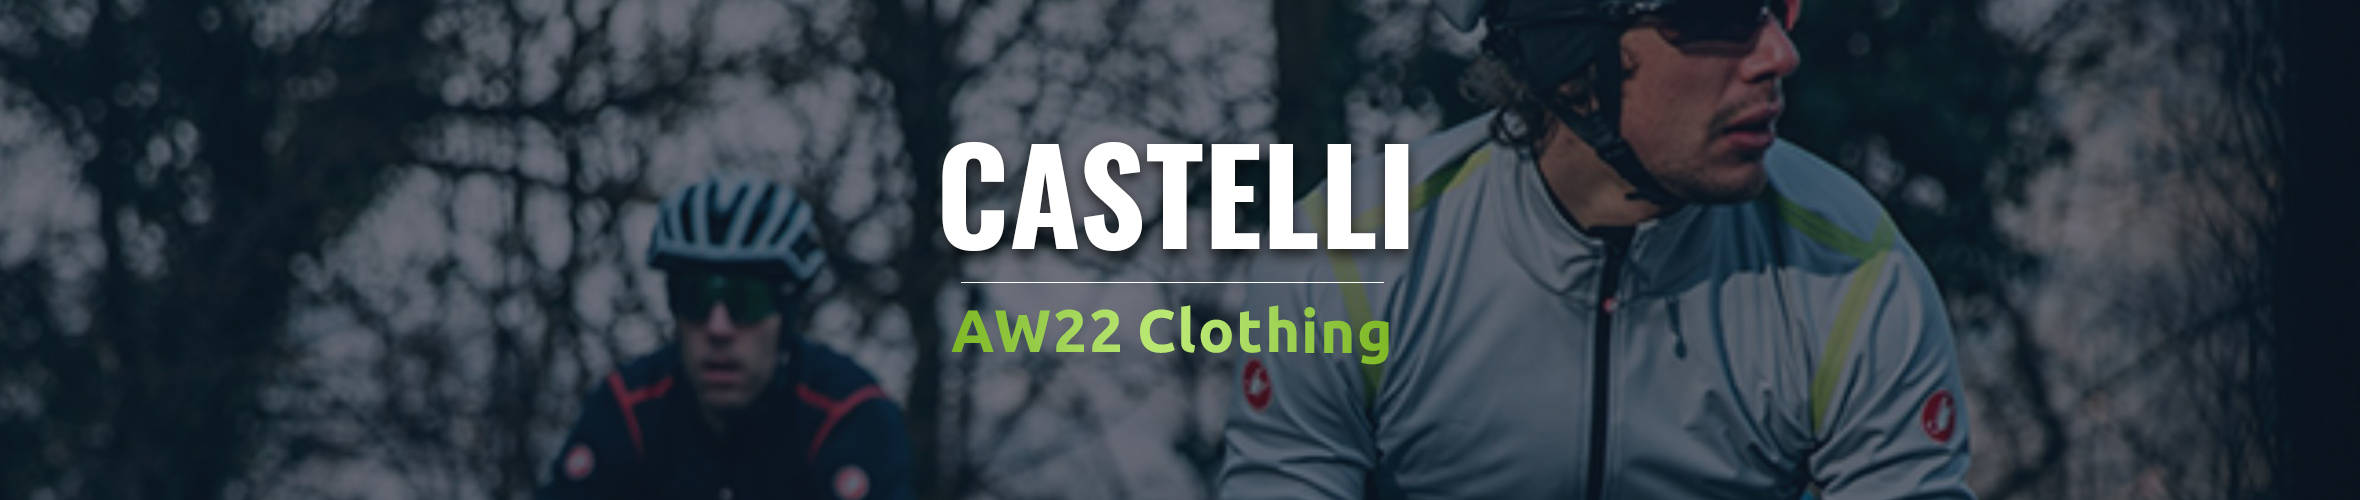 Castelli Clothing